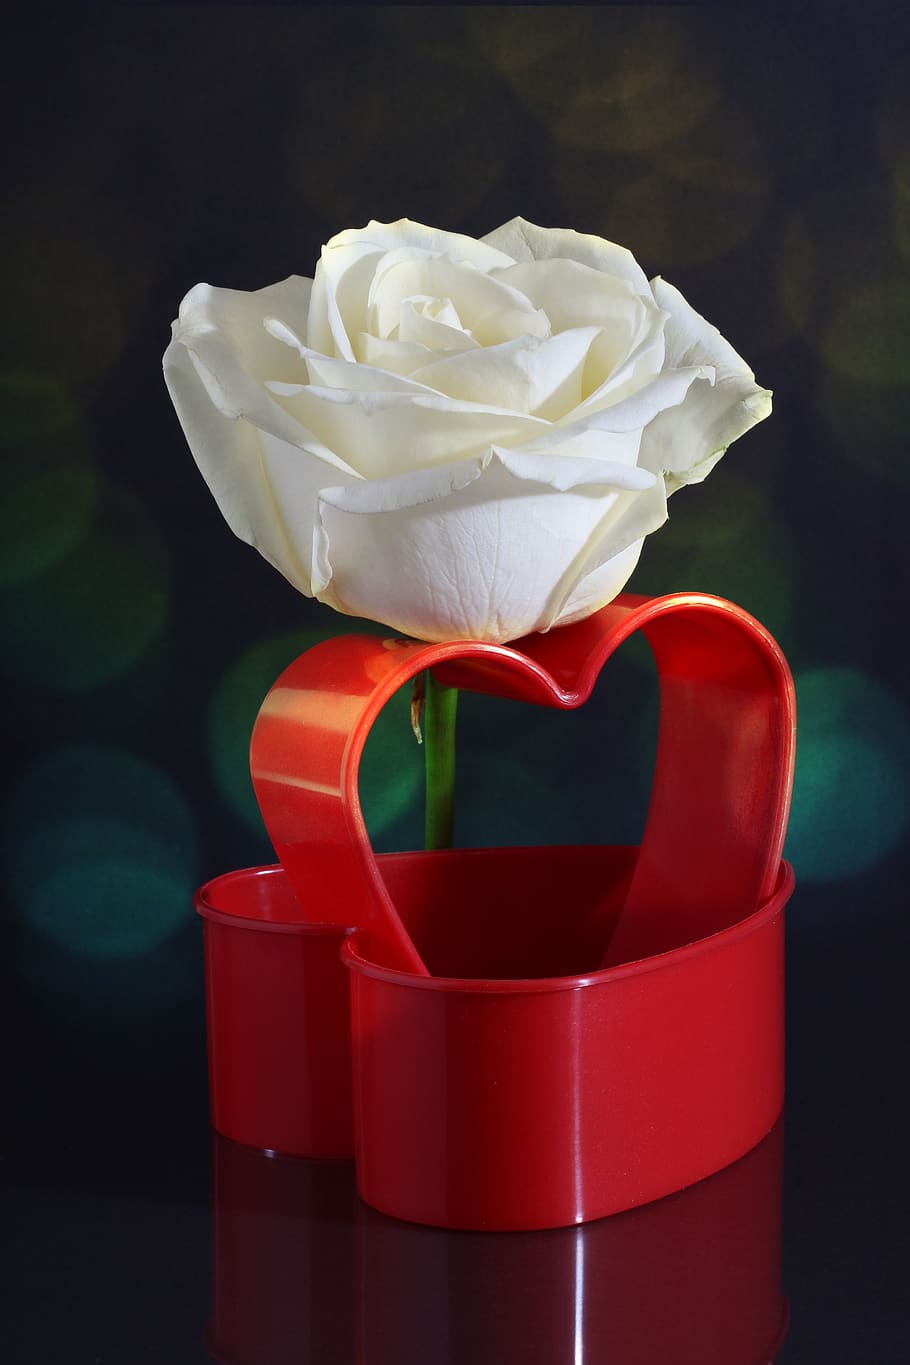 mawar, putih, jantung, merah, bentuk hati, cinta, kasih sayang, romantis, bokeh, cahaya